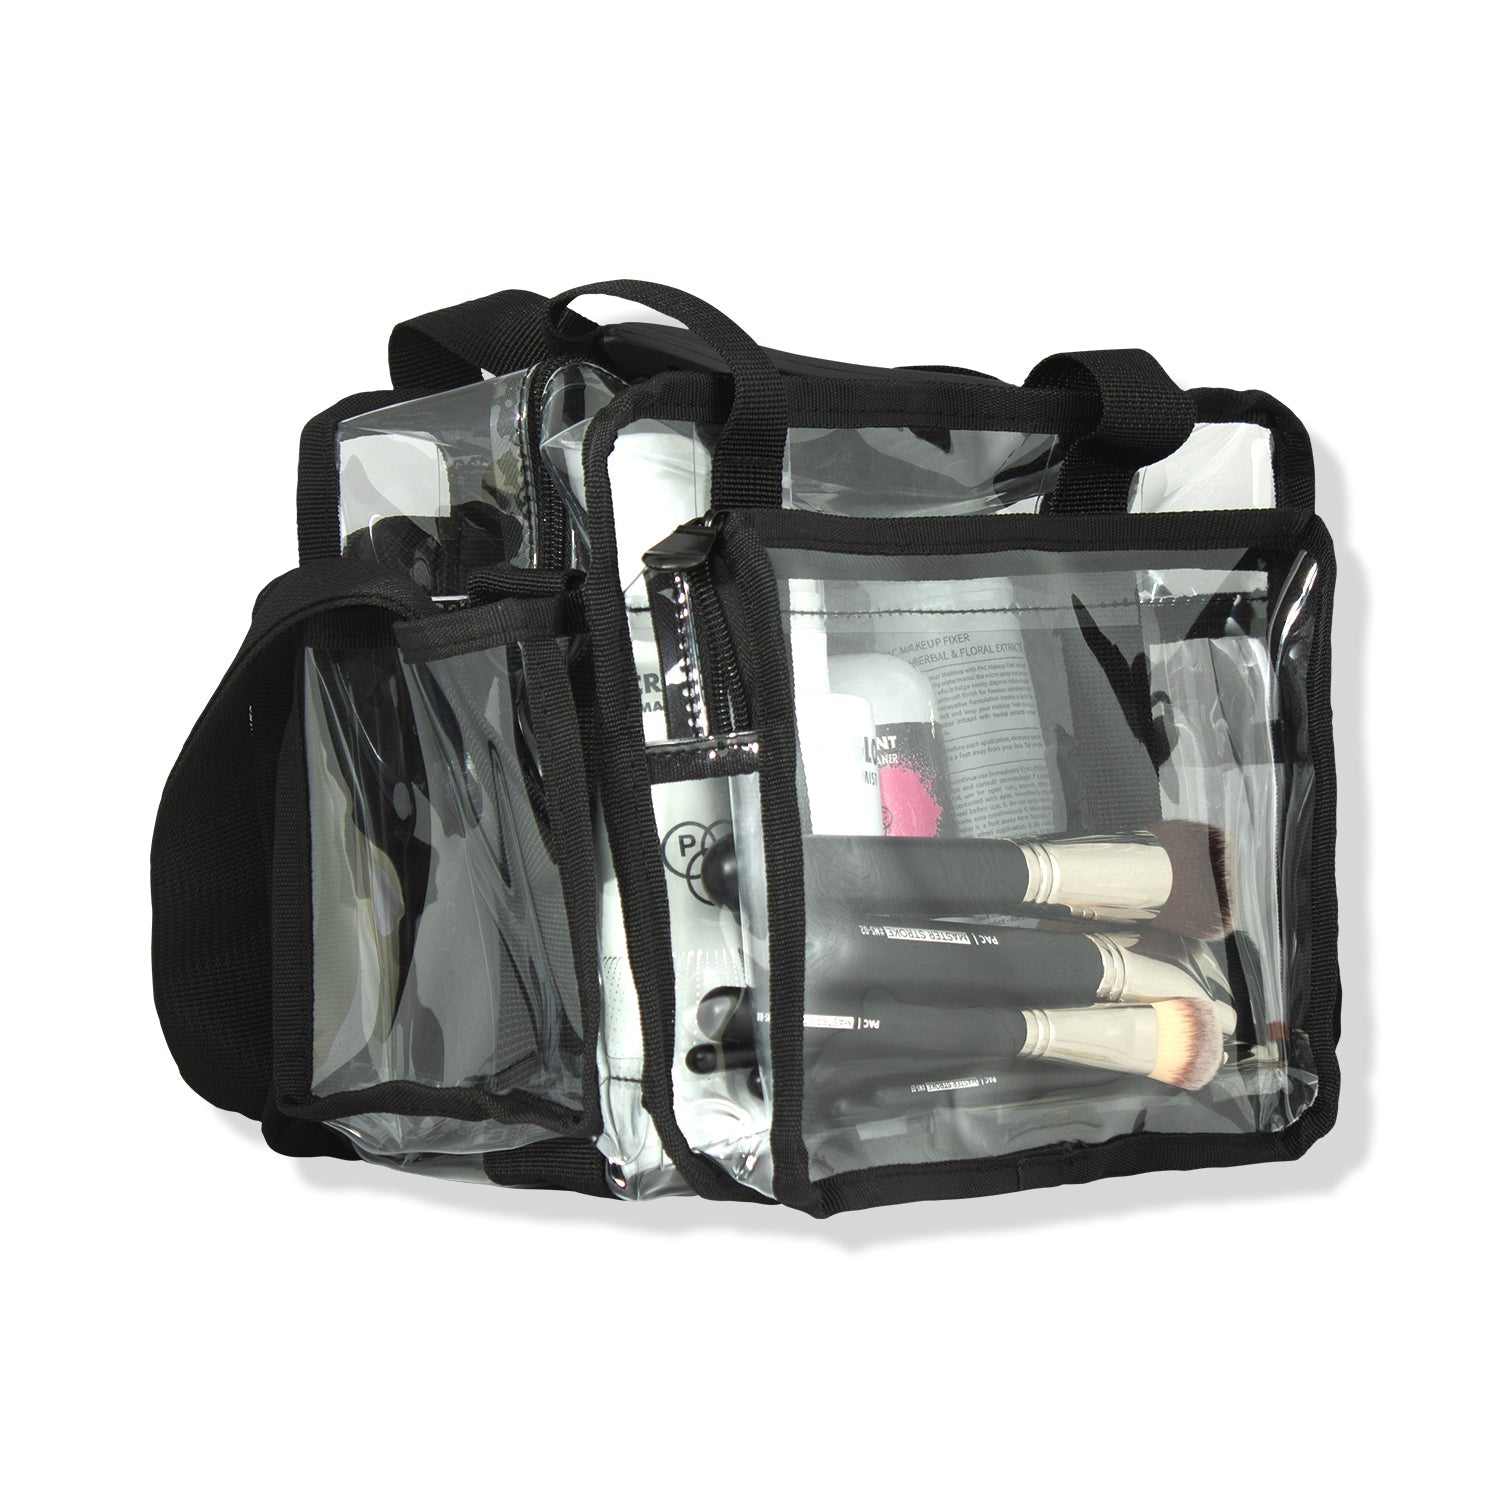 PAC Cosmetics Makeup Trunk Bag